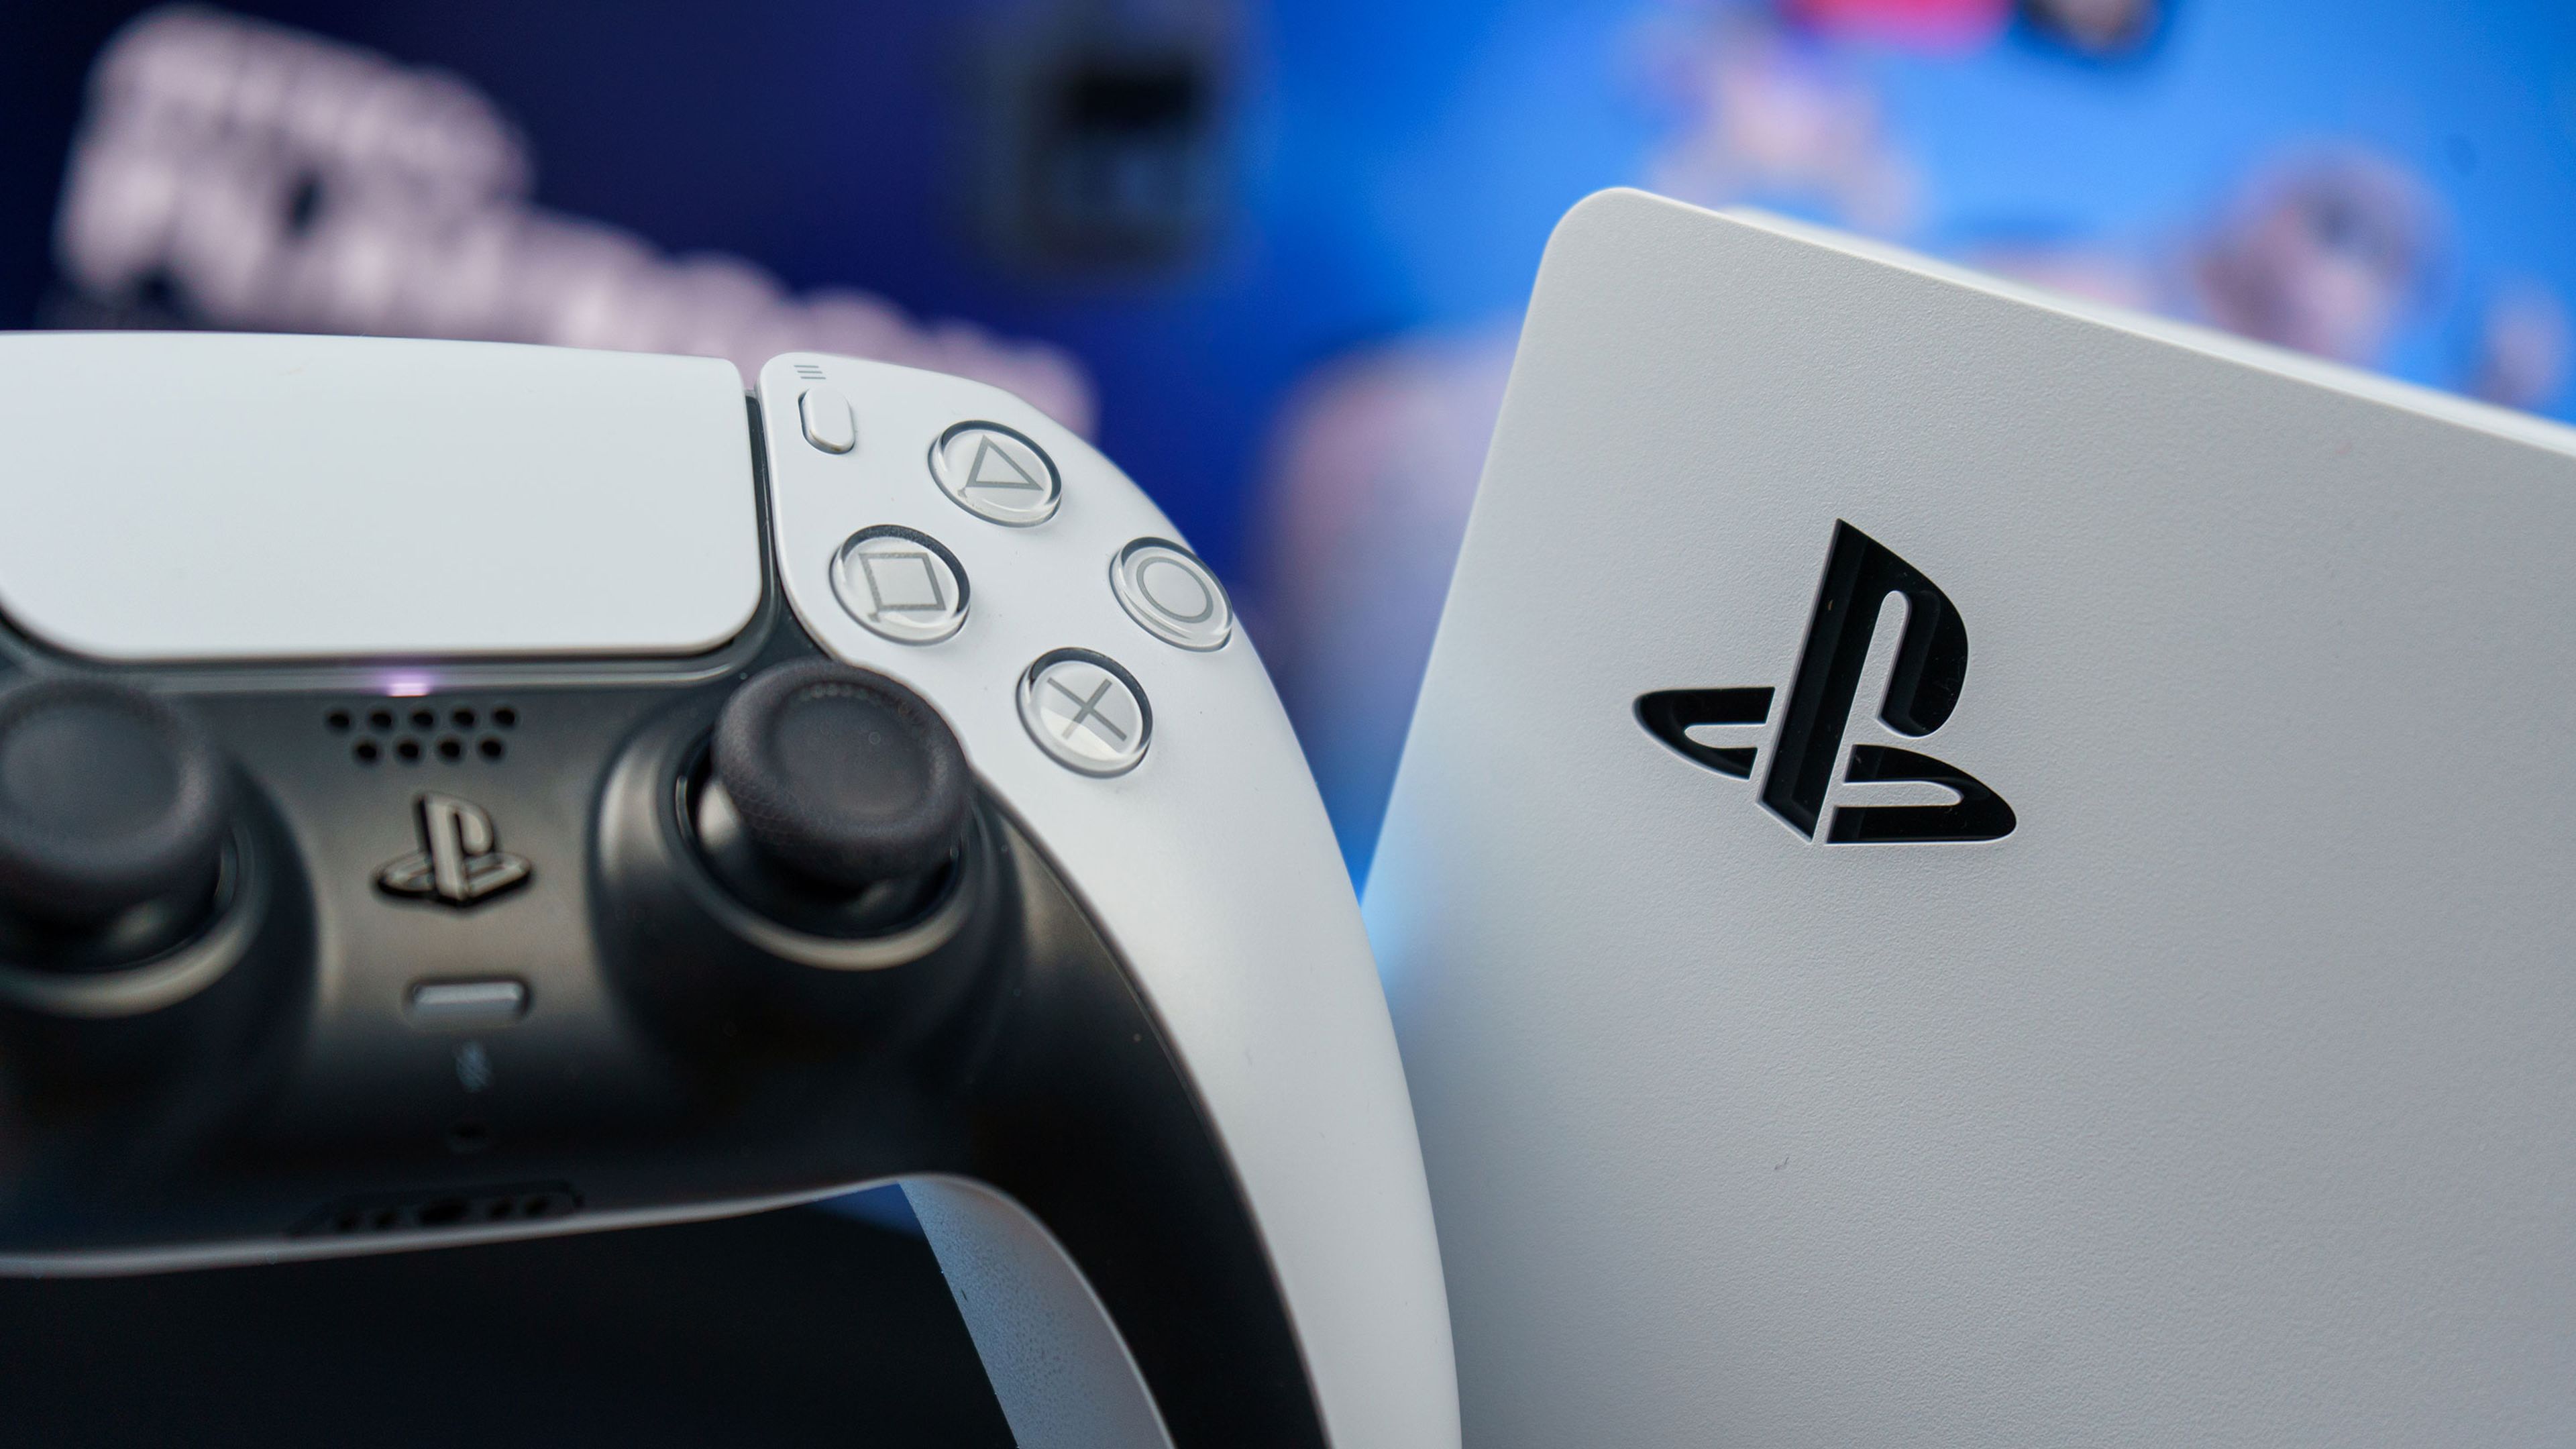 PS5: todos los juegos confirmados por ahora para PlayStation 5 - Meristation